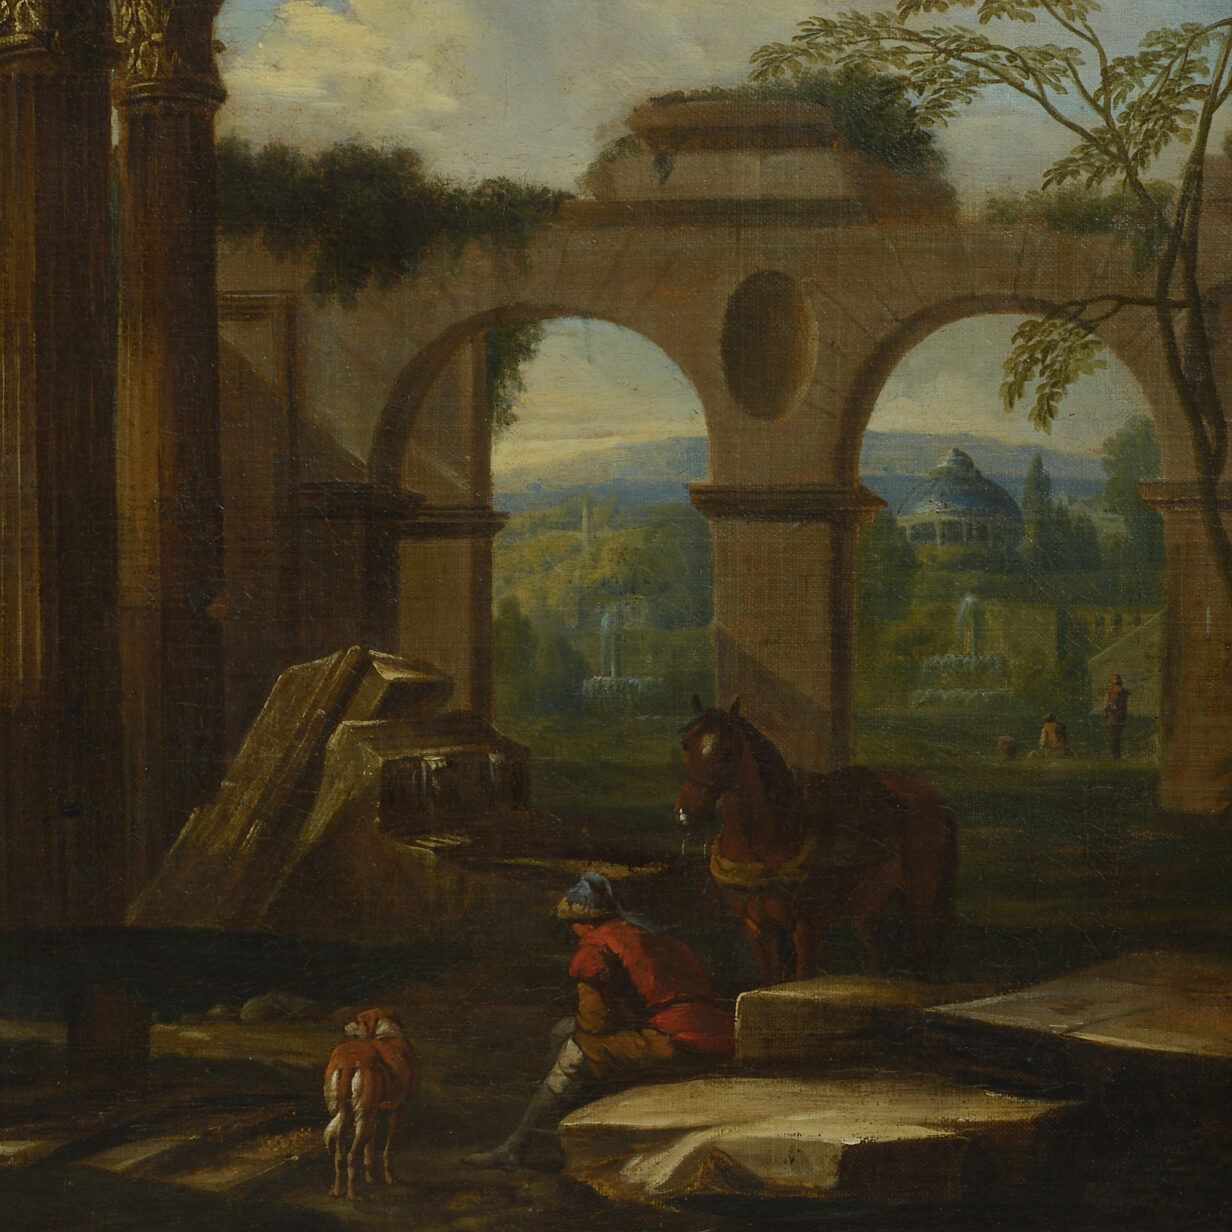 Studio of Giuseppe Zocchi, An 18th Century Architectural Capriccio, Oil on Canvas